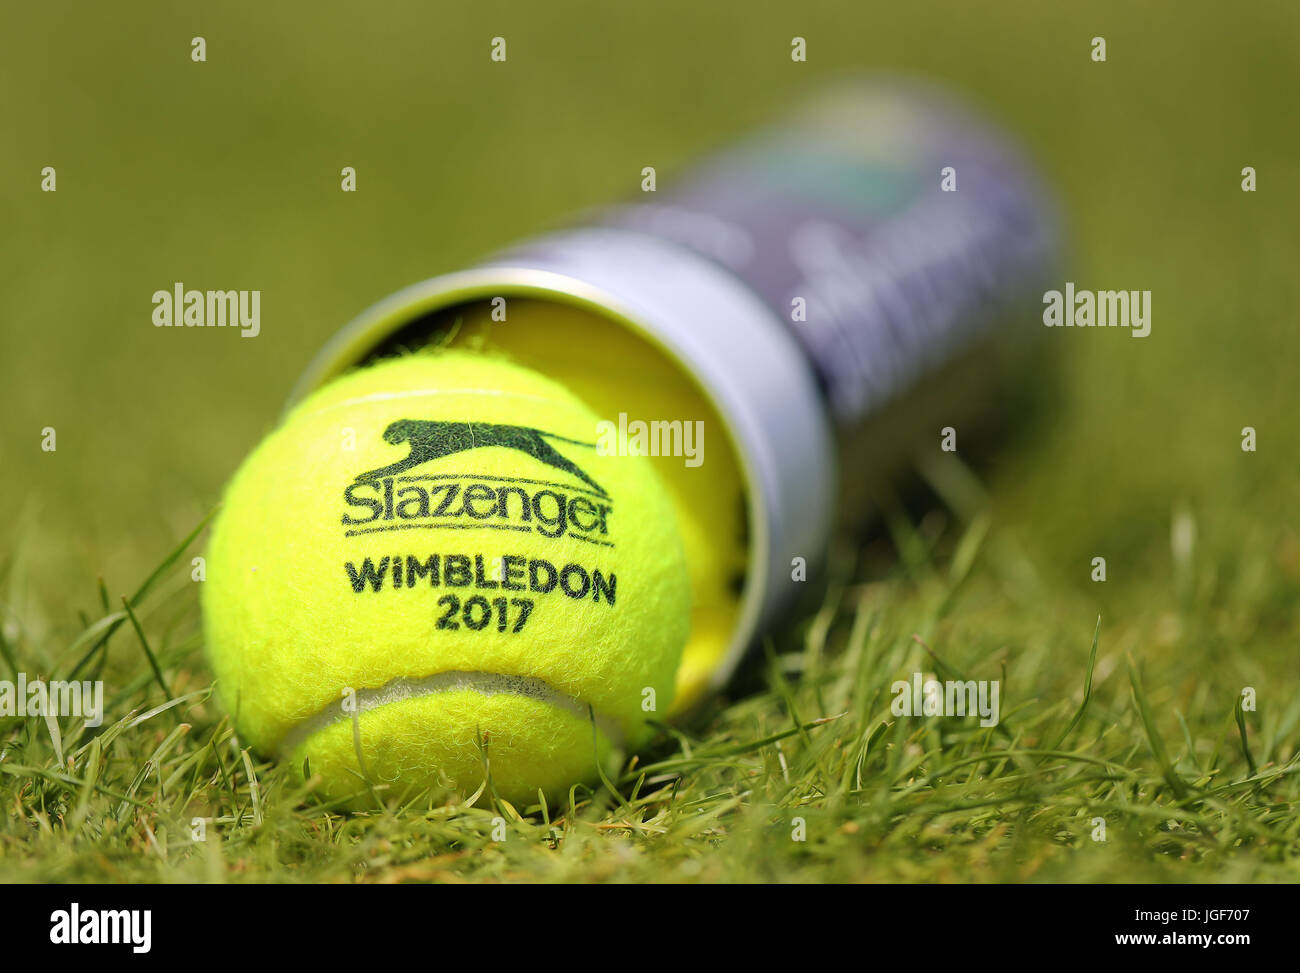 Tin slazenger wimbledon tennis balls hi-res stock photography and images -  Alamy